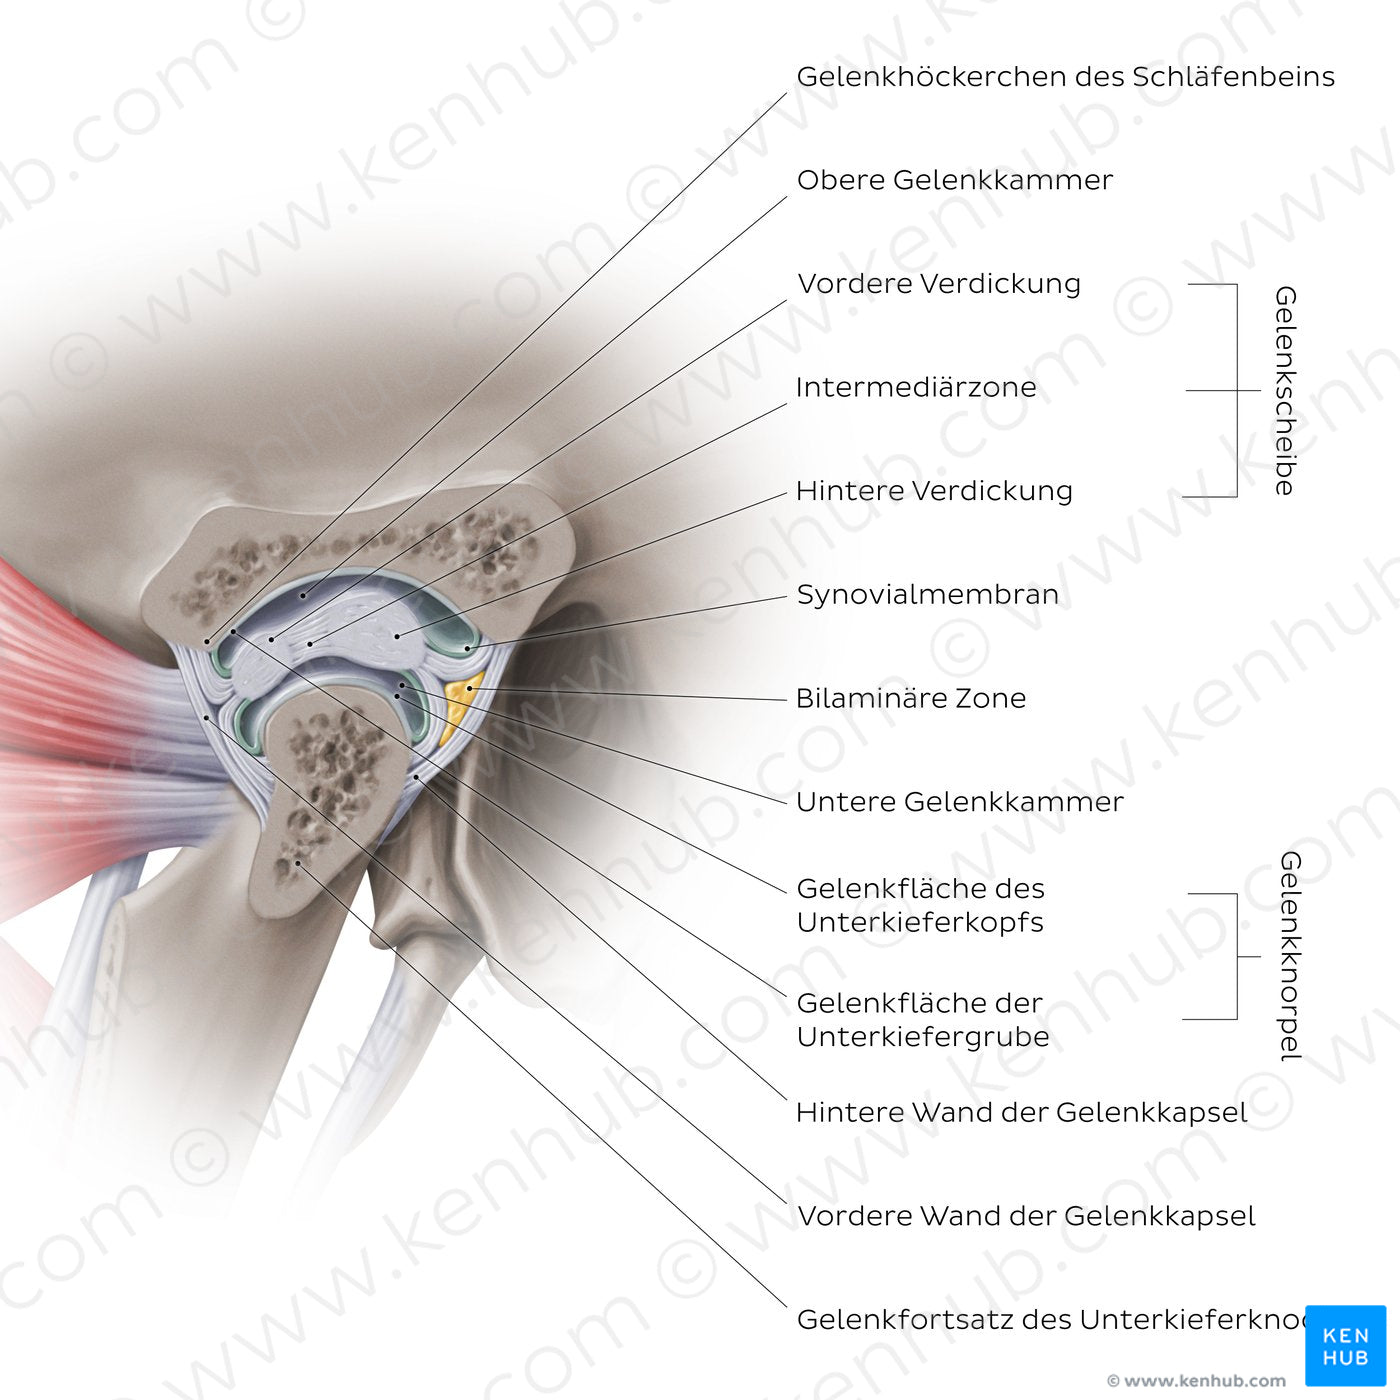 Temporomandibular joint: capsule (German)